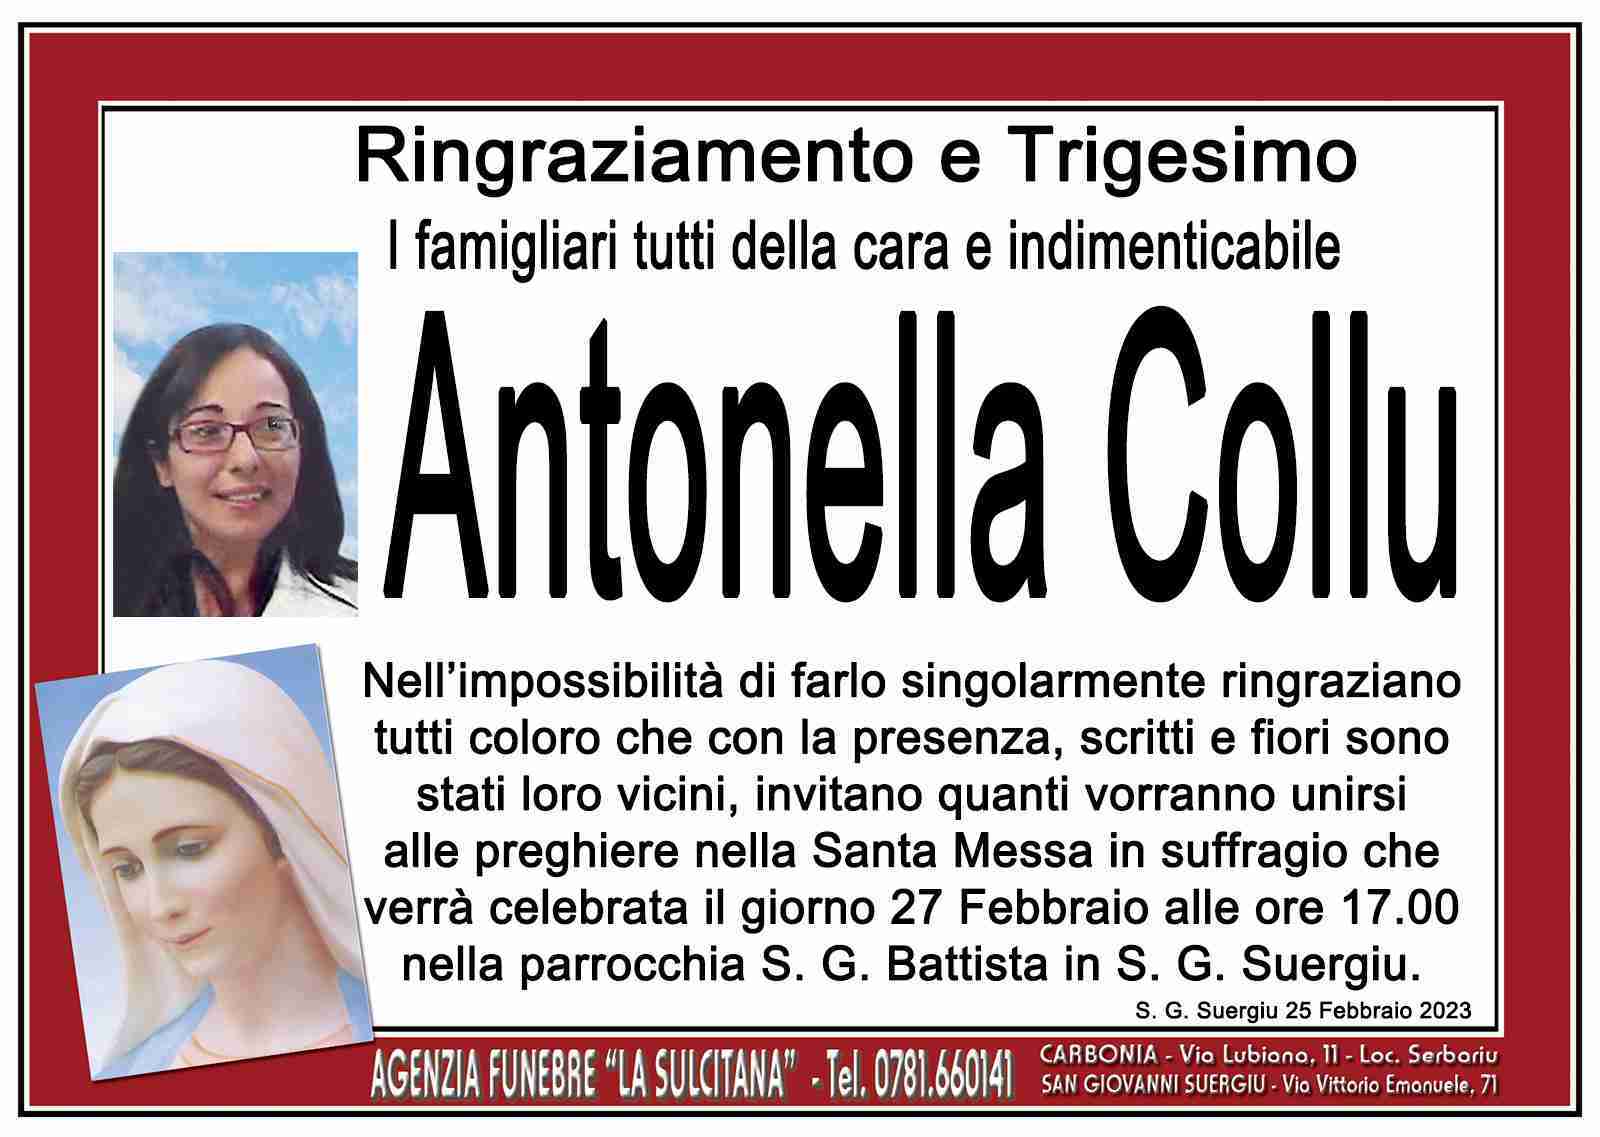 Antonella Collu